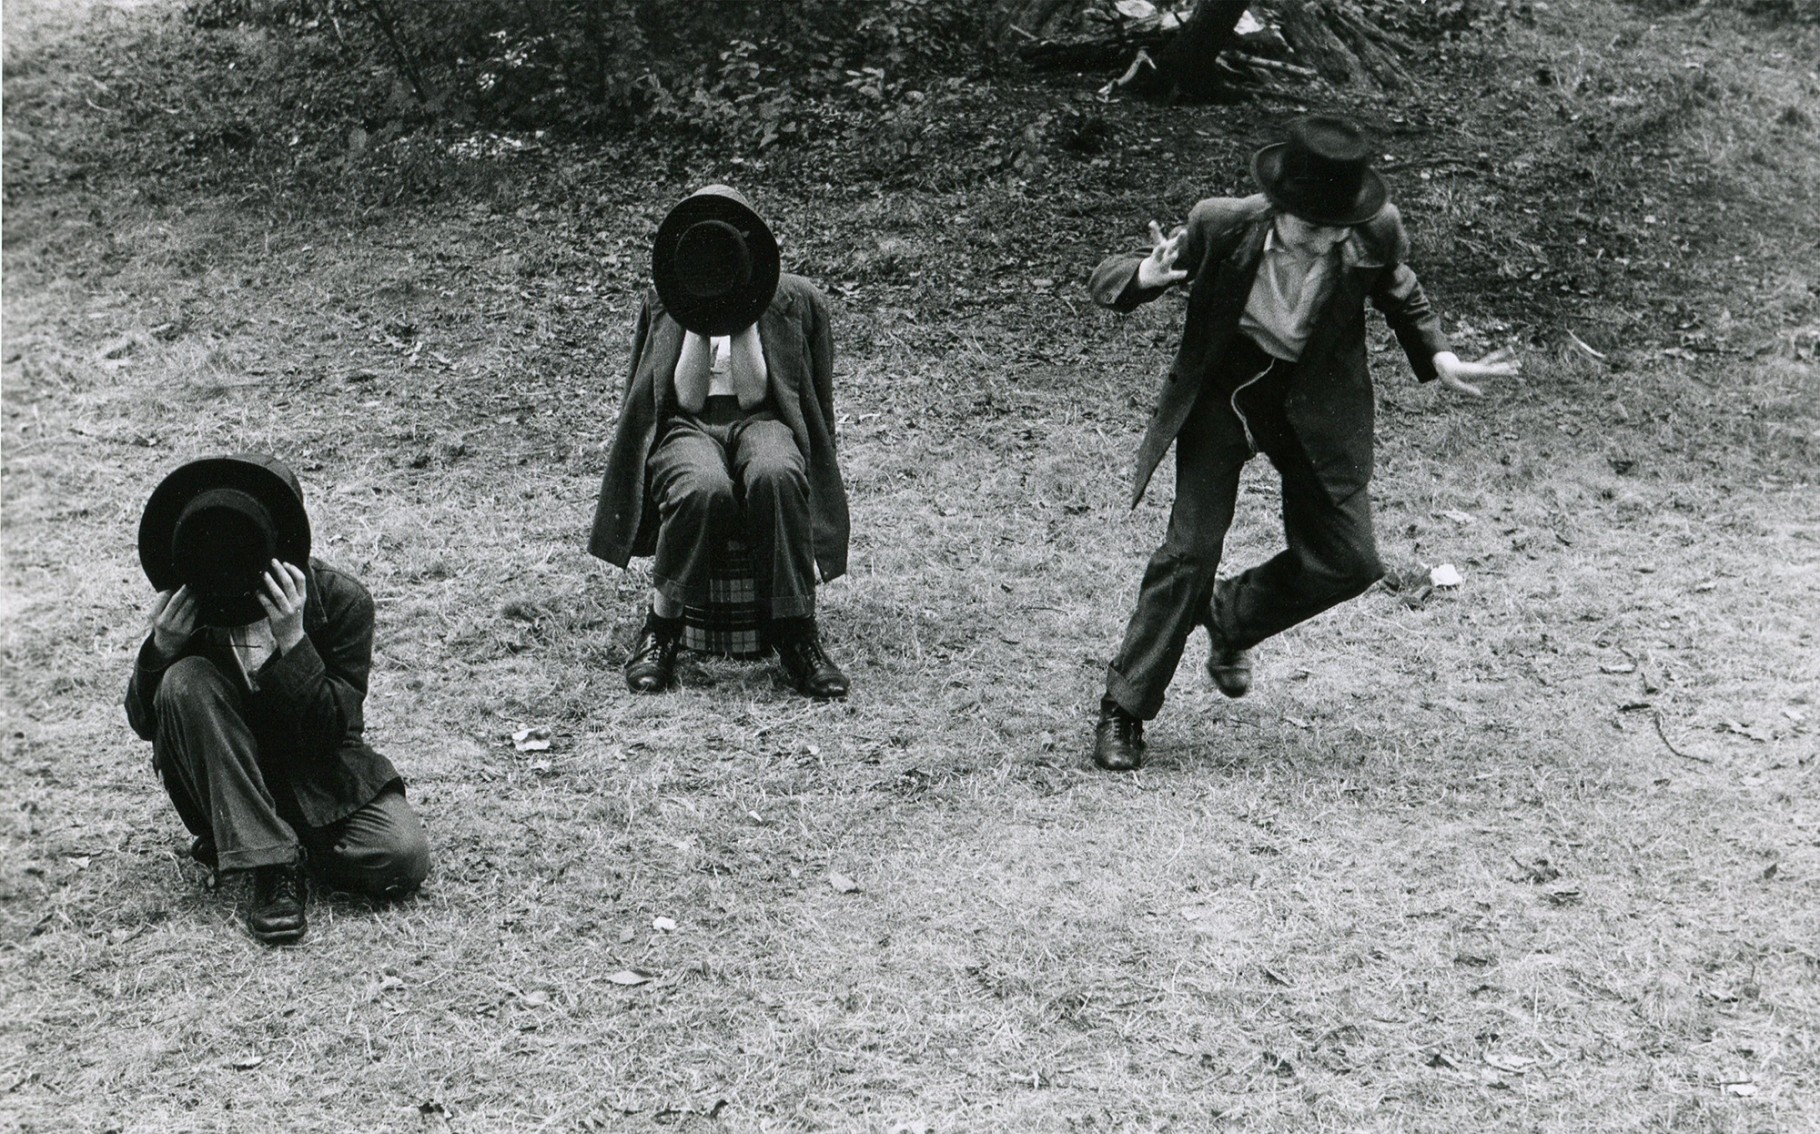 Мальчики-хасиды закрывают лицо шляпами, а один из них пытается сбежать, потому что фотографирование противоречит религиозному закону, Бруклин, Нью-Йорк, 1954. Фотограф Леонард Фрид